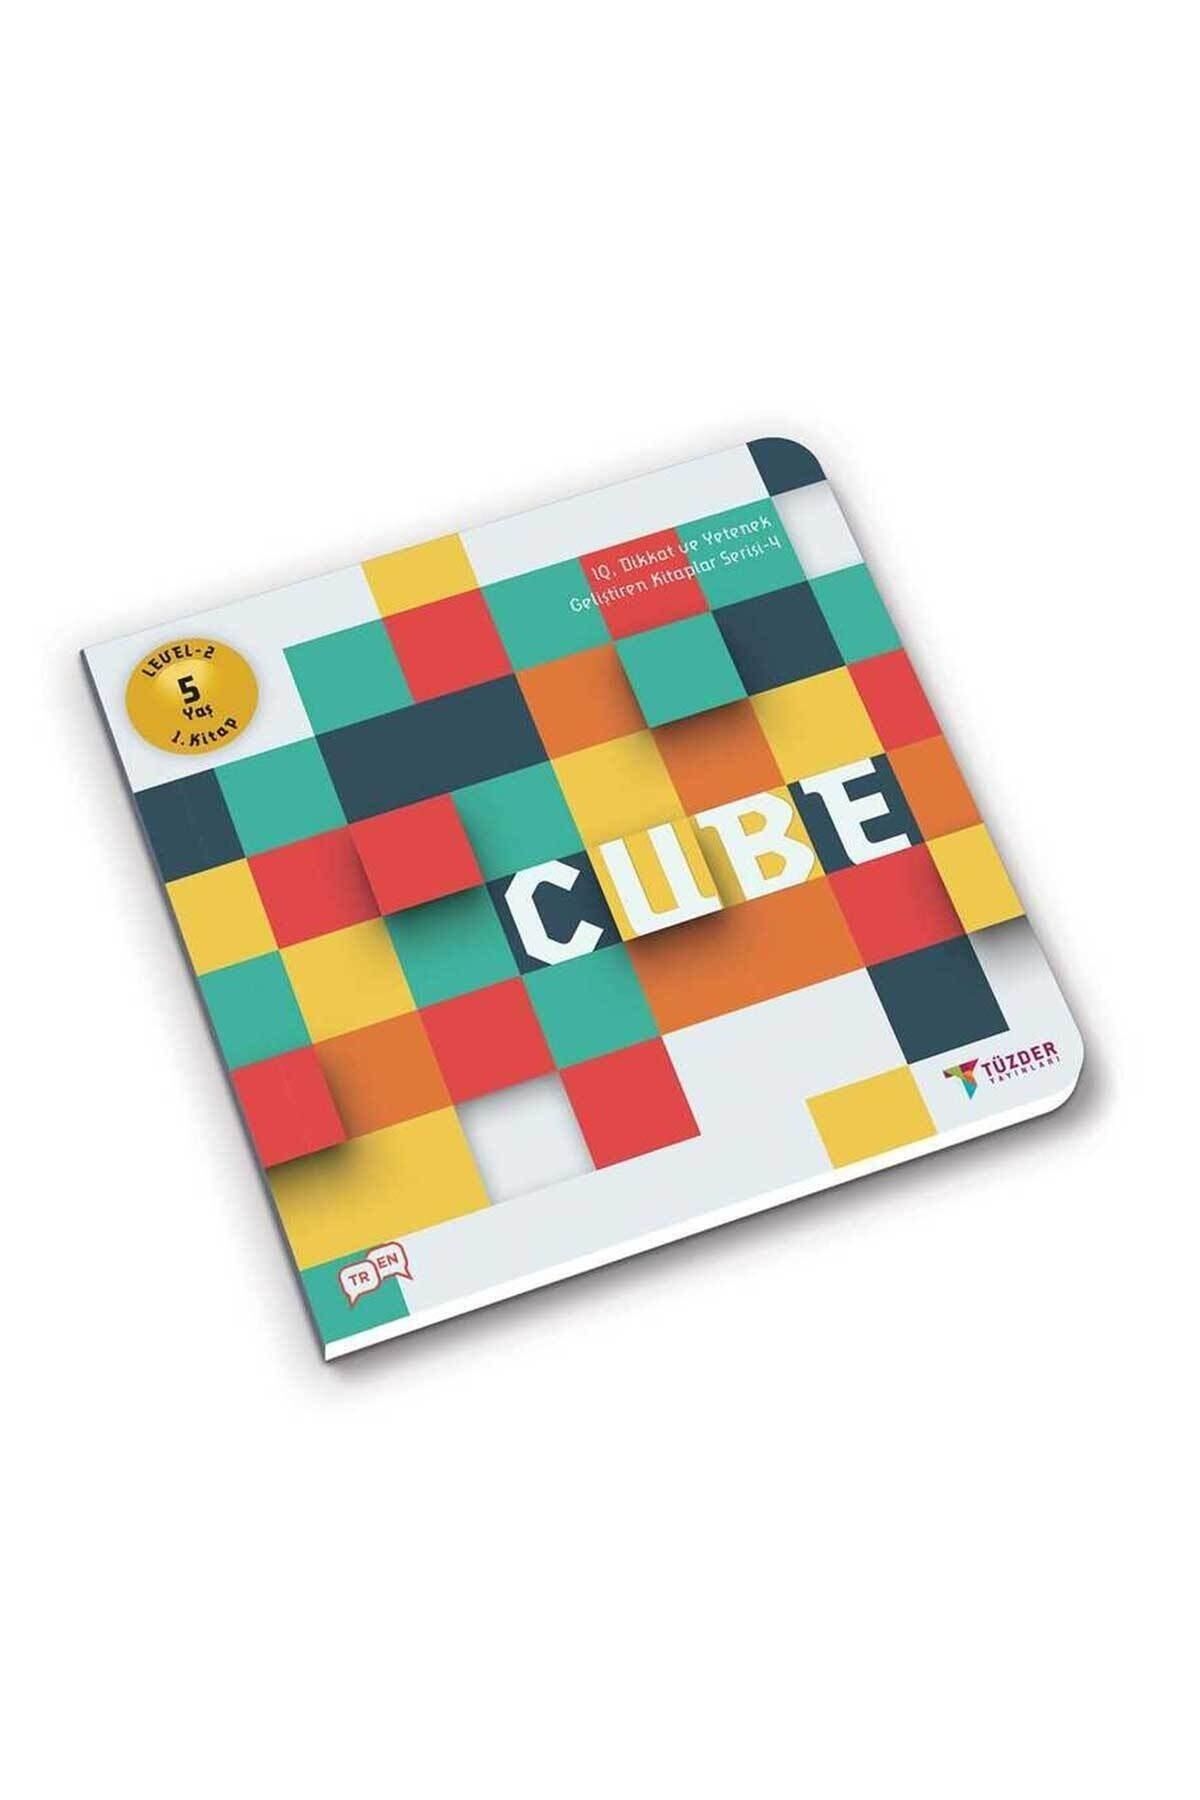 TÜZDER Yayınları Cube-5+ Yaş Level 2 1.kitap-ıq Ve Yetenek Geliştiren Kitaplar Serisi